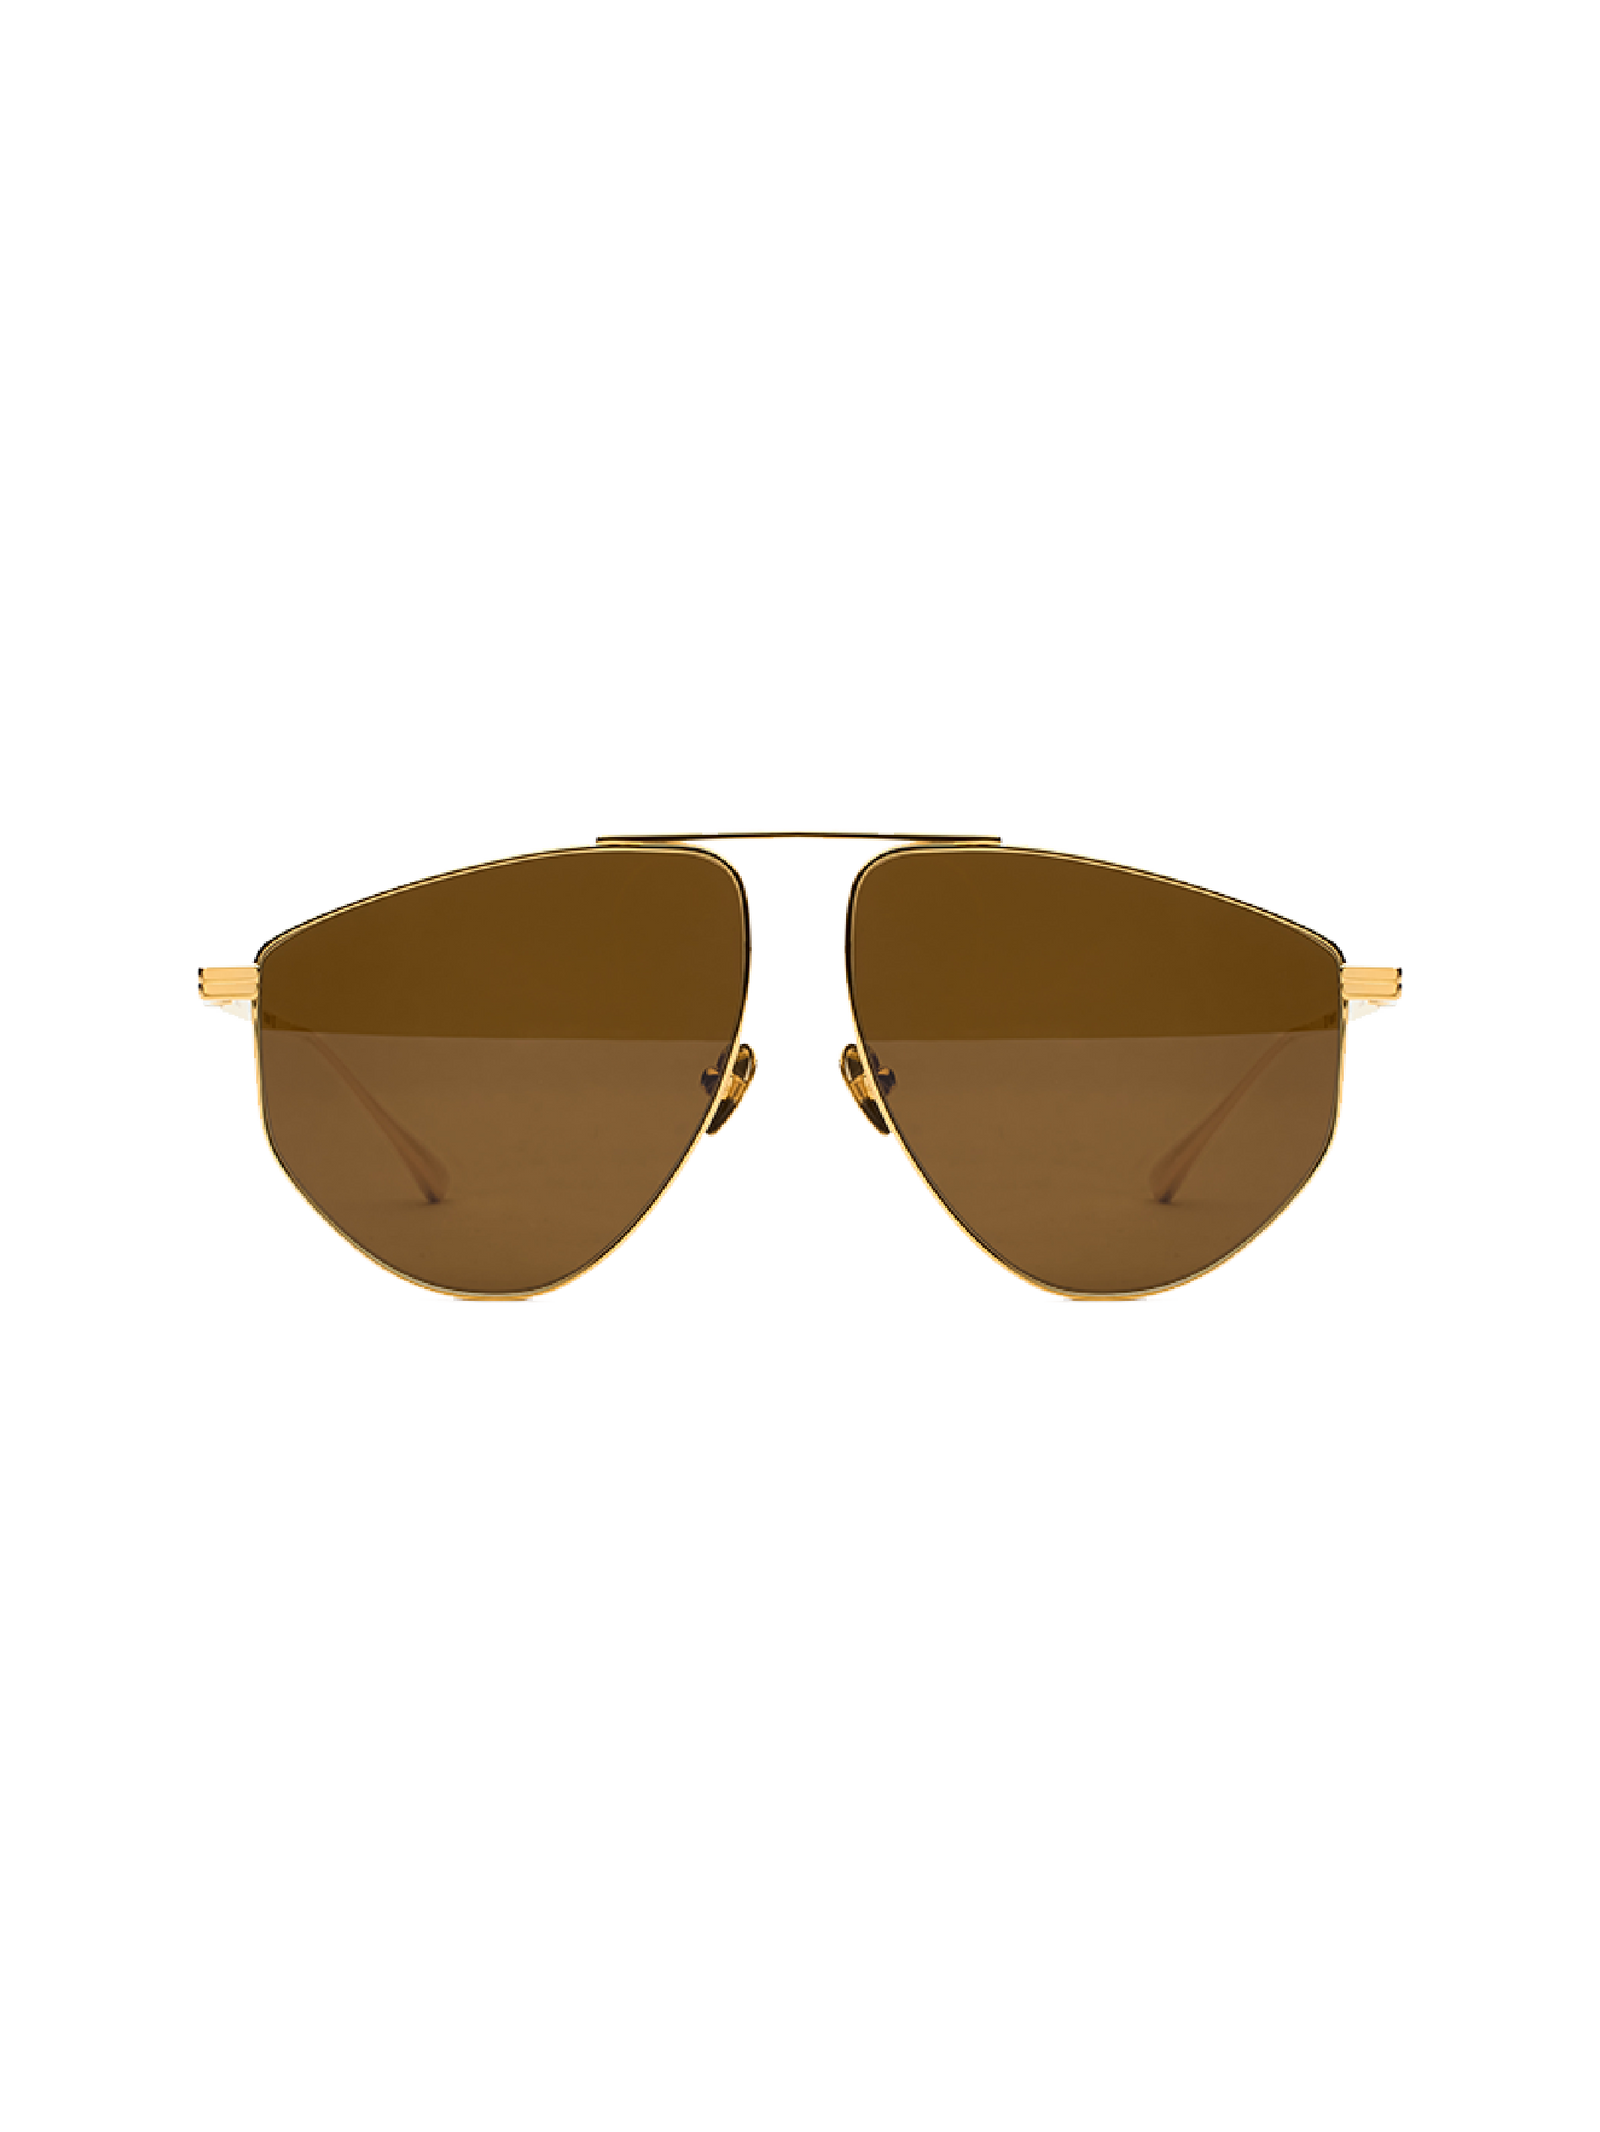 Taito Sunglasses - Gold/Brown